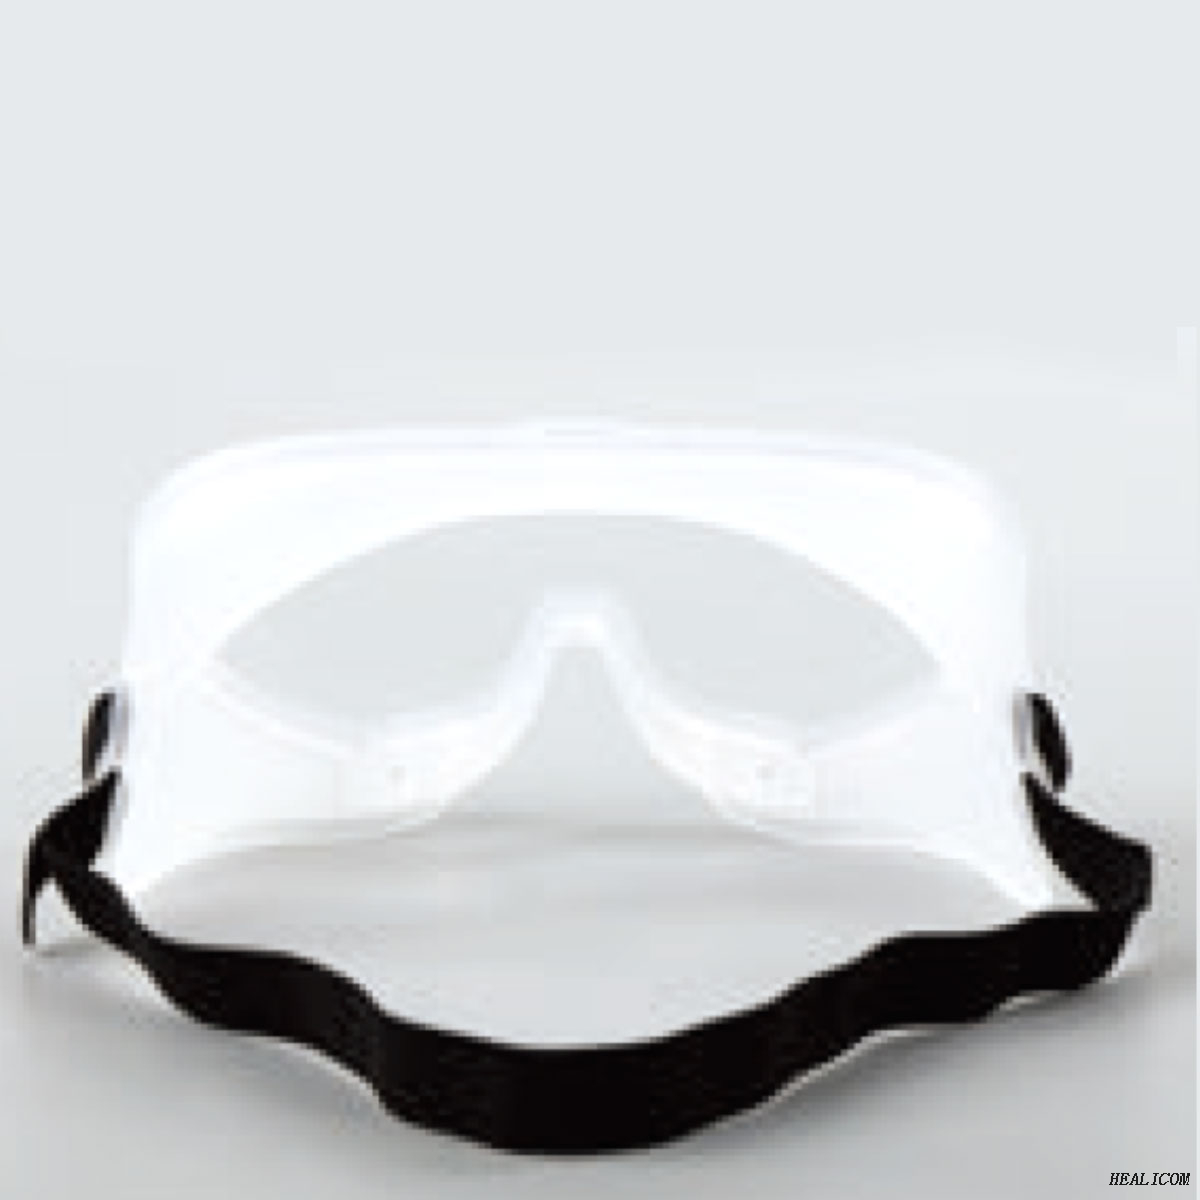 HYZ-A Lunettes de protection pour masques oculaires d'isolement médical jetables